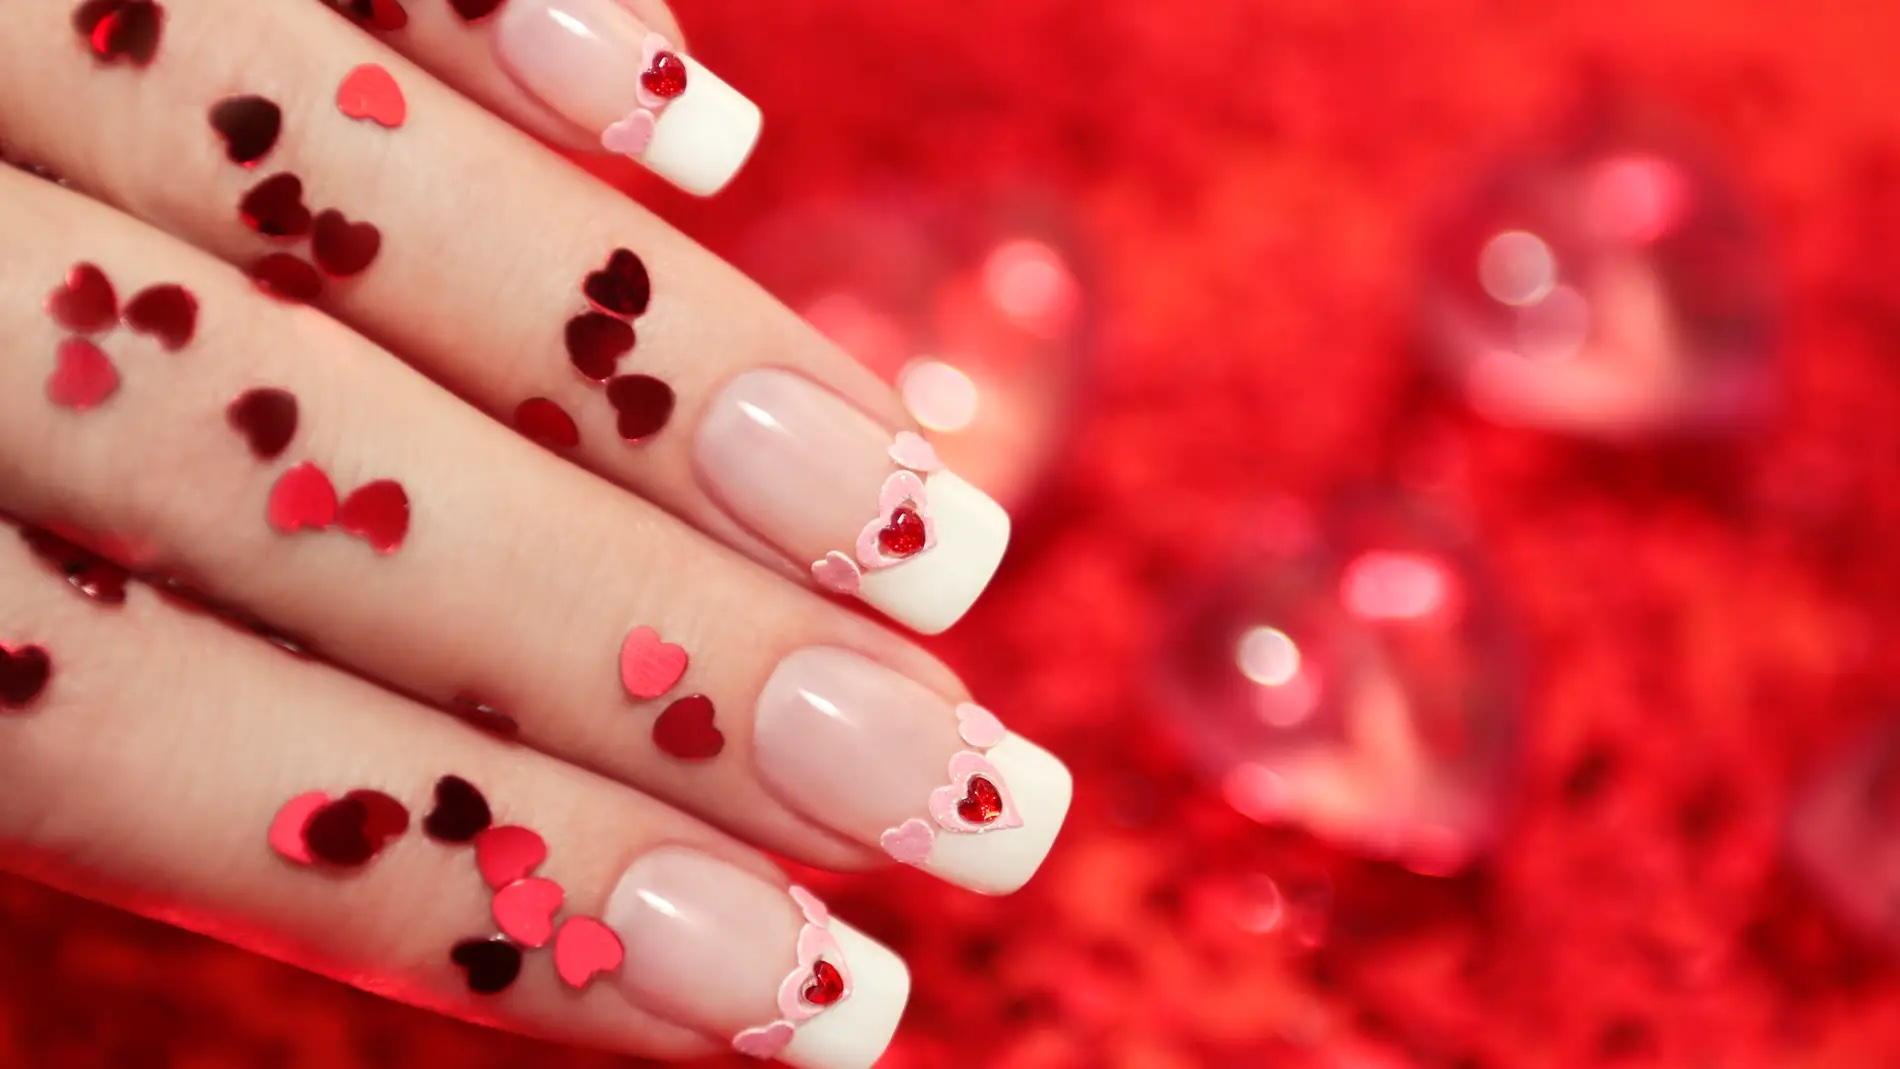 5 manicuras (llena de corazones) para celebrar San Valentín